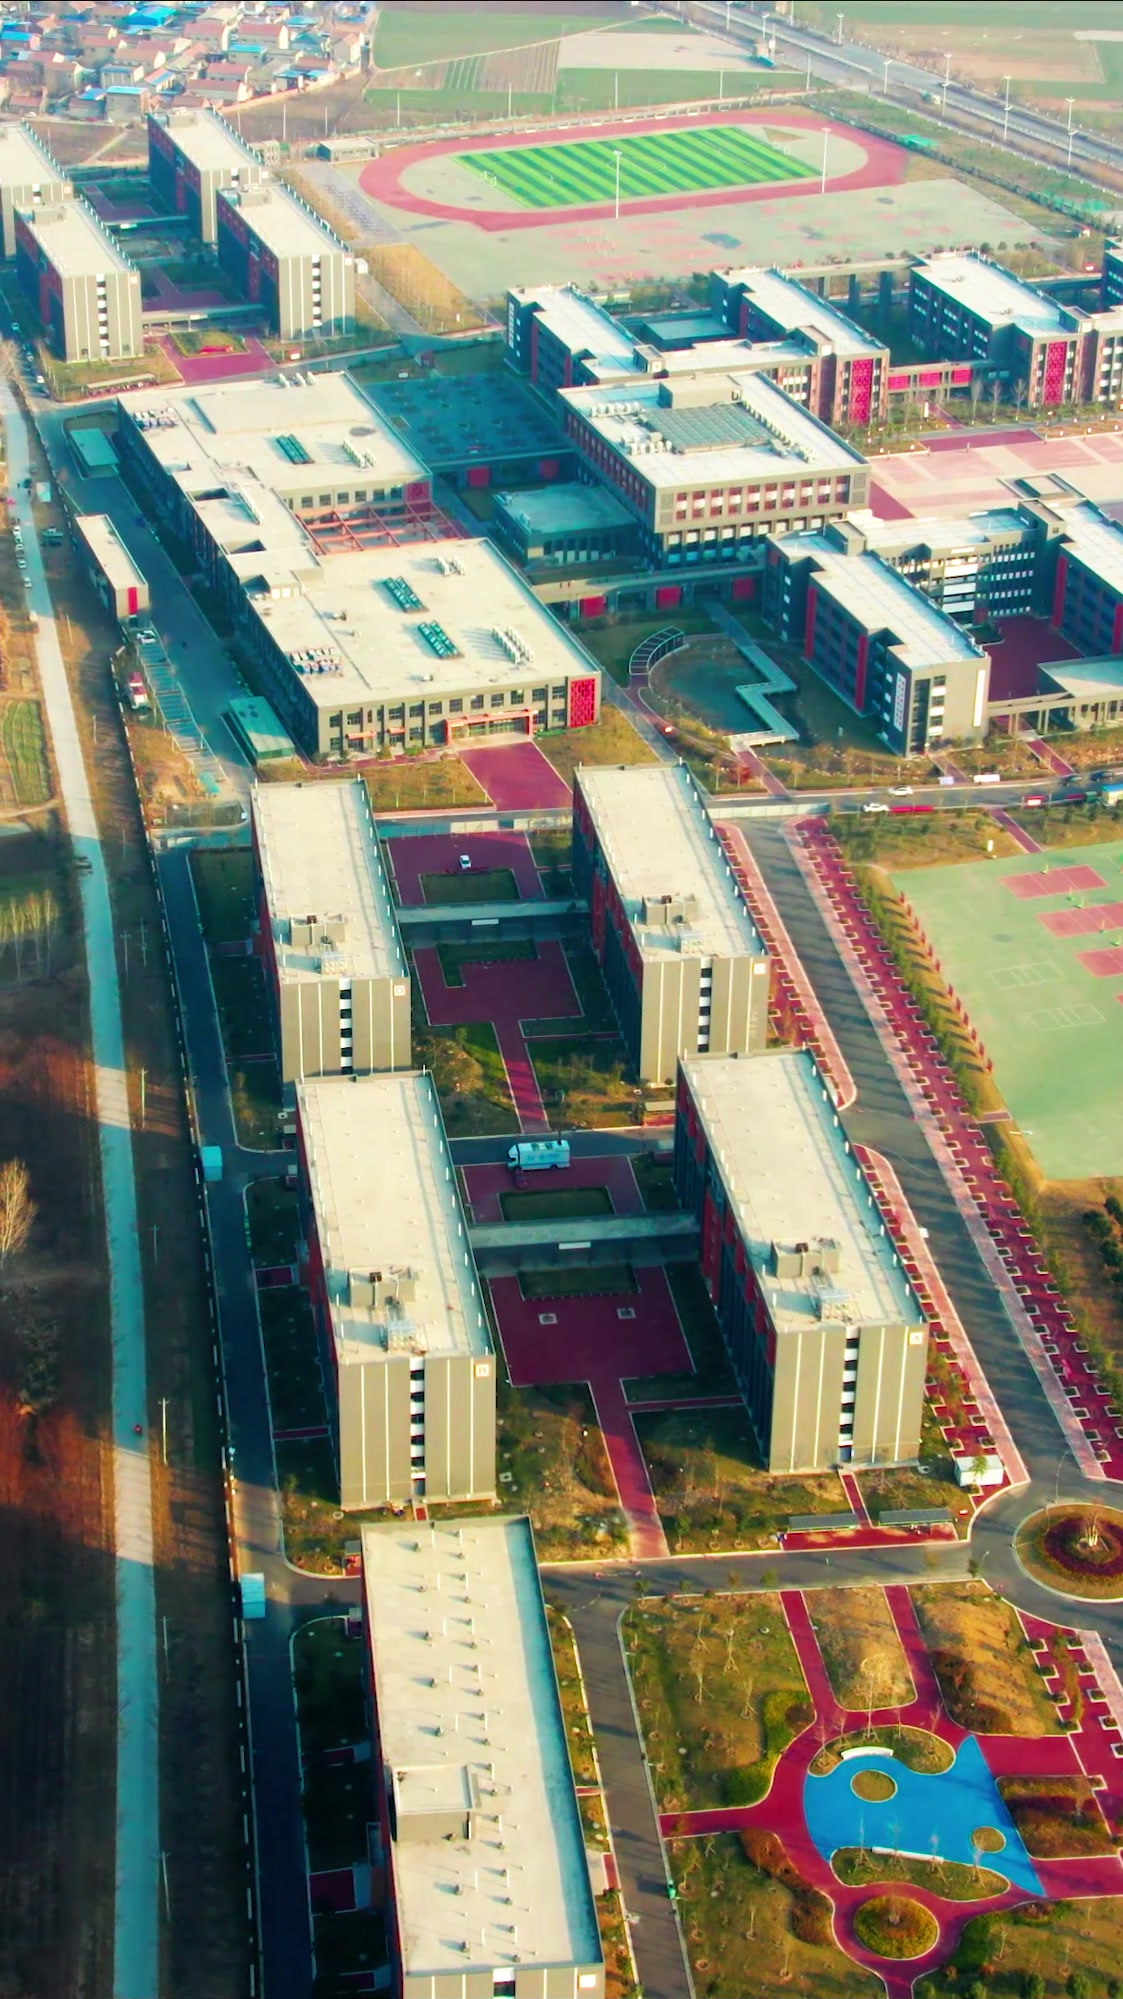 延津县一中新校区规划图片